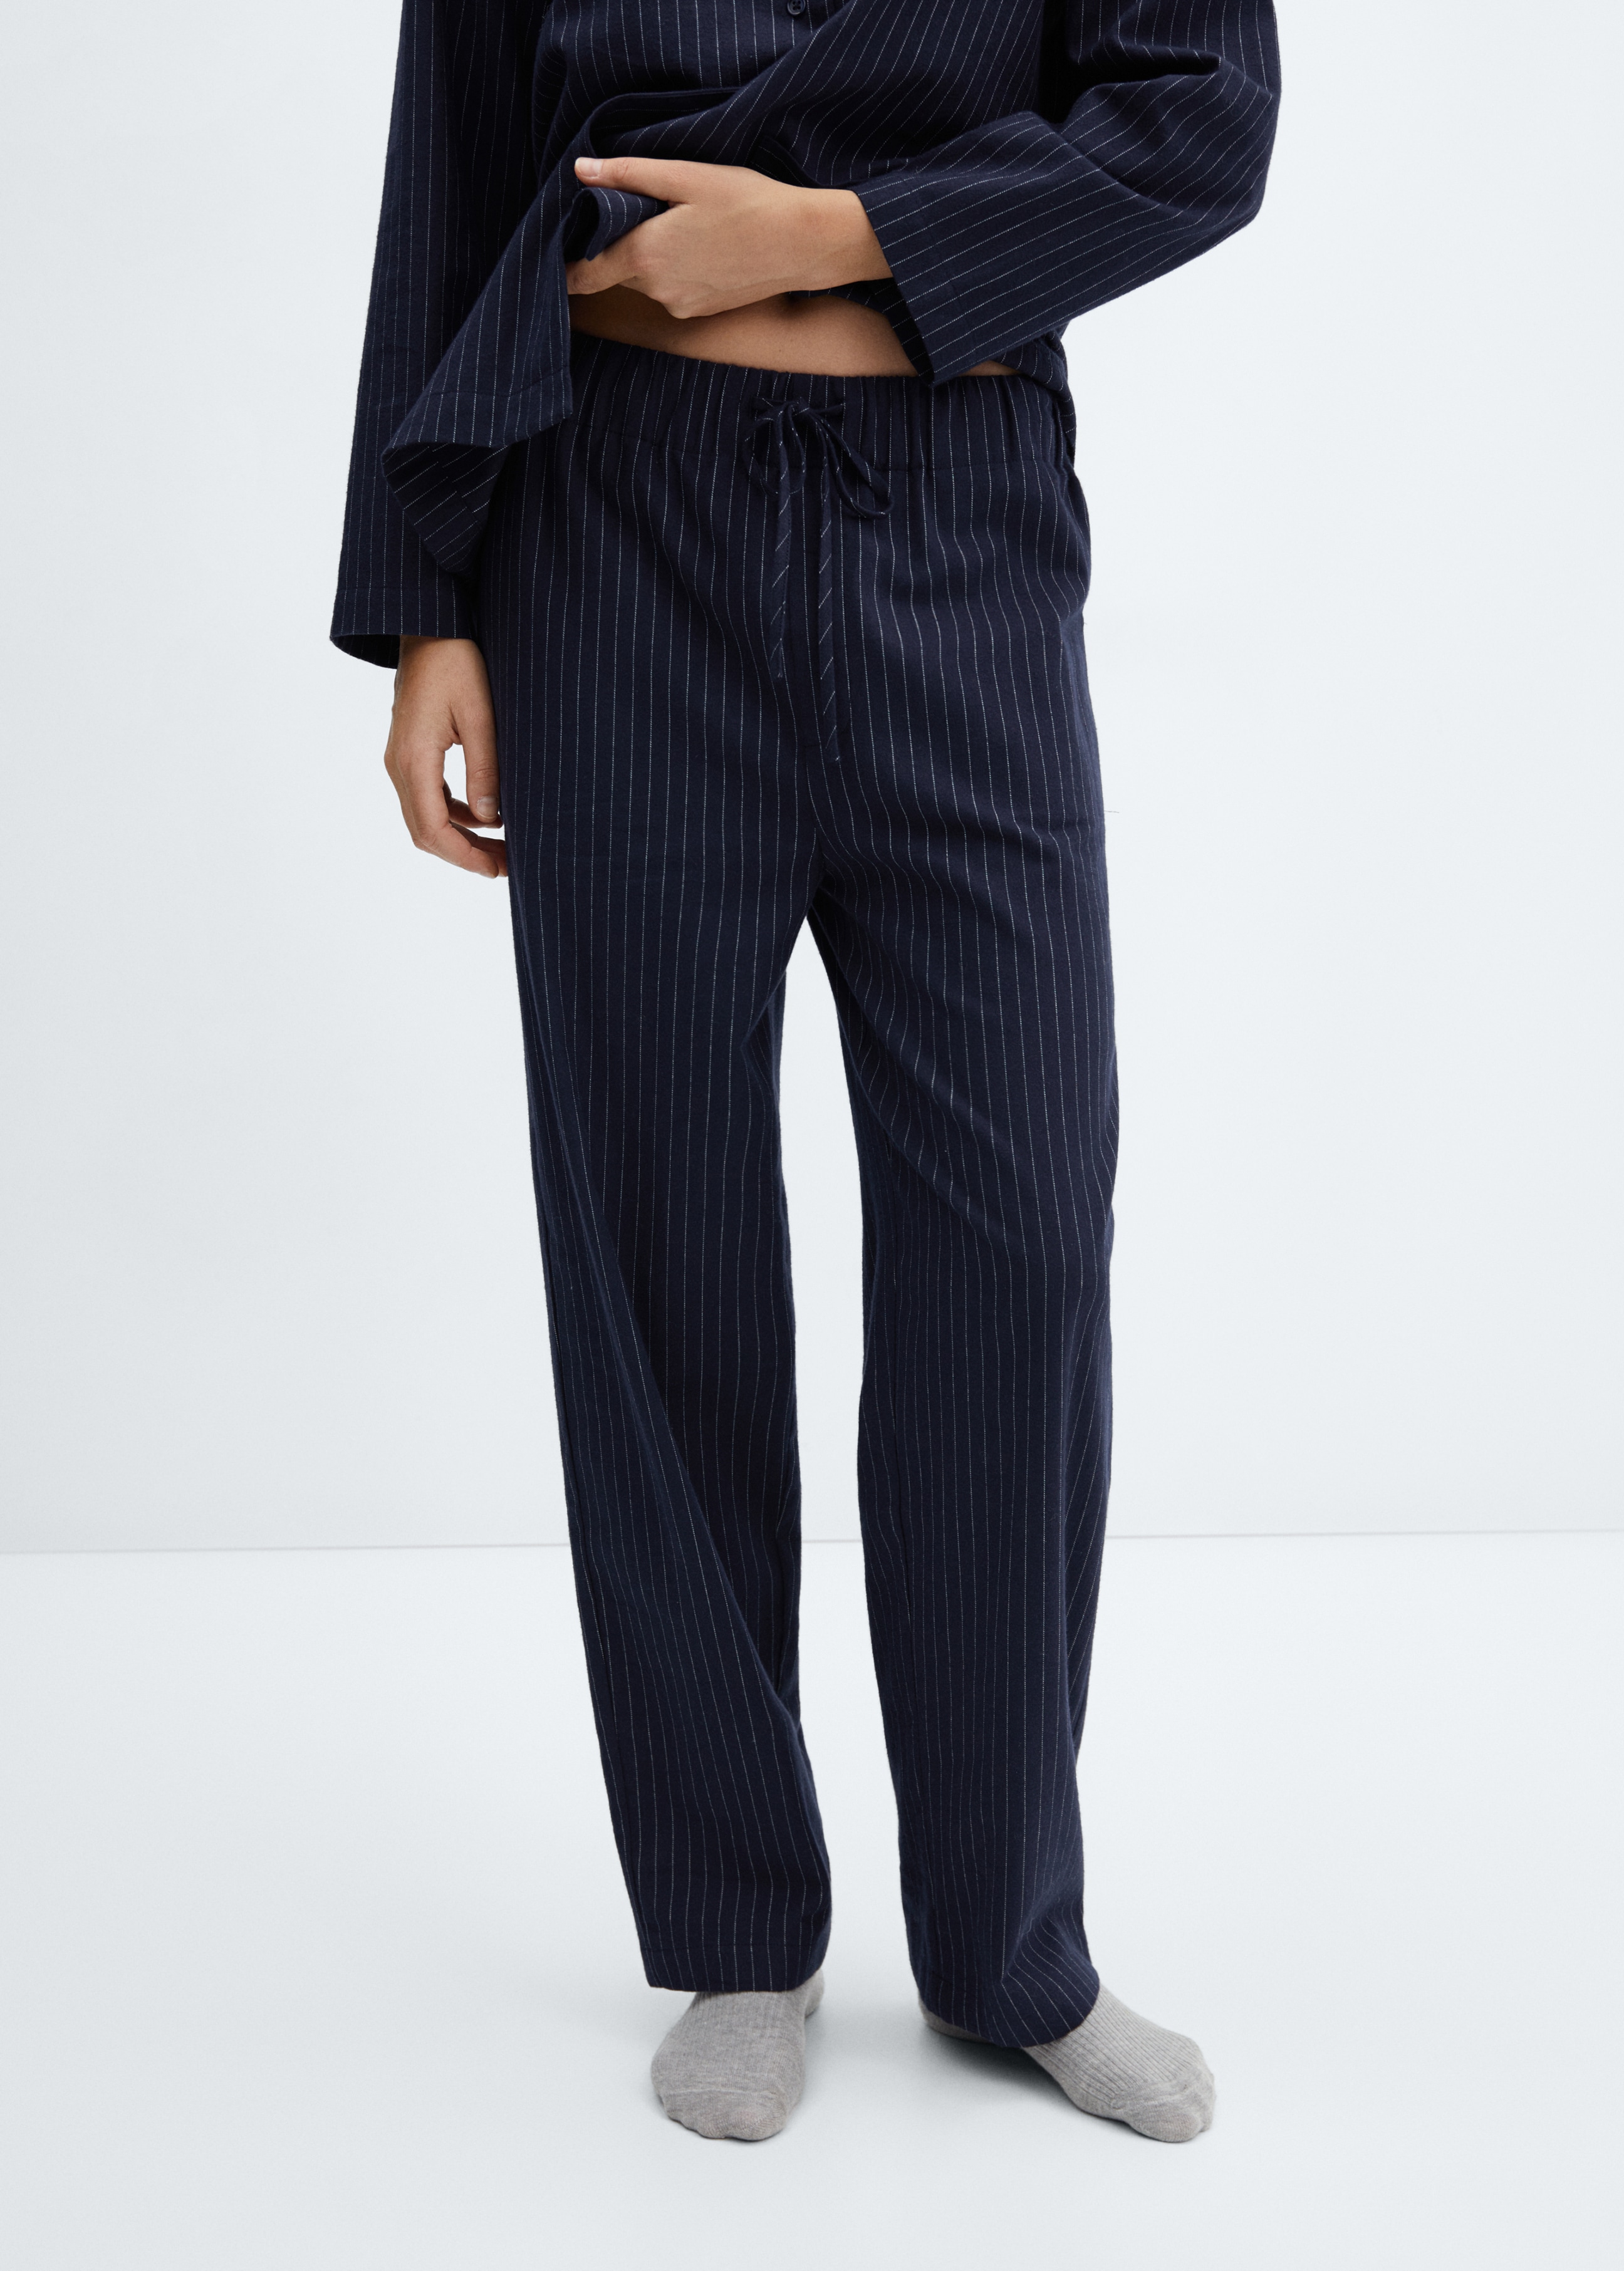 Striped pajama trousers - Medium plane